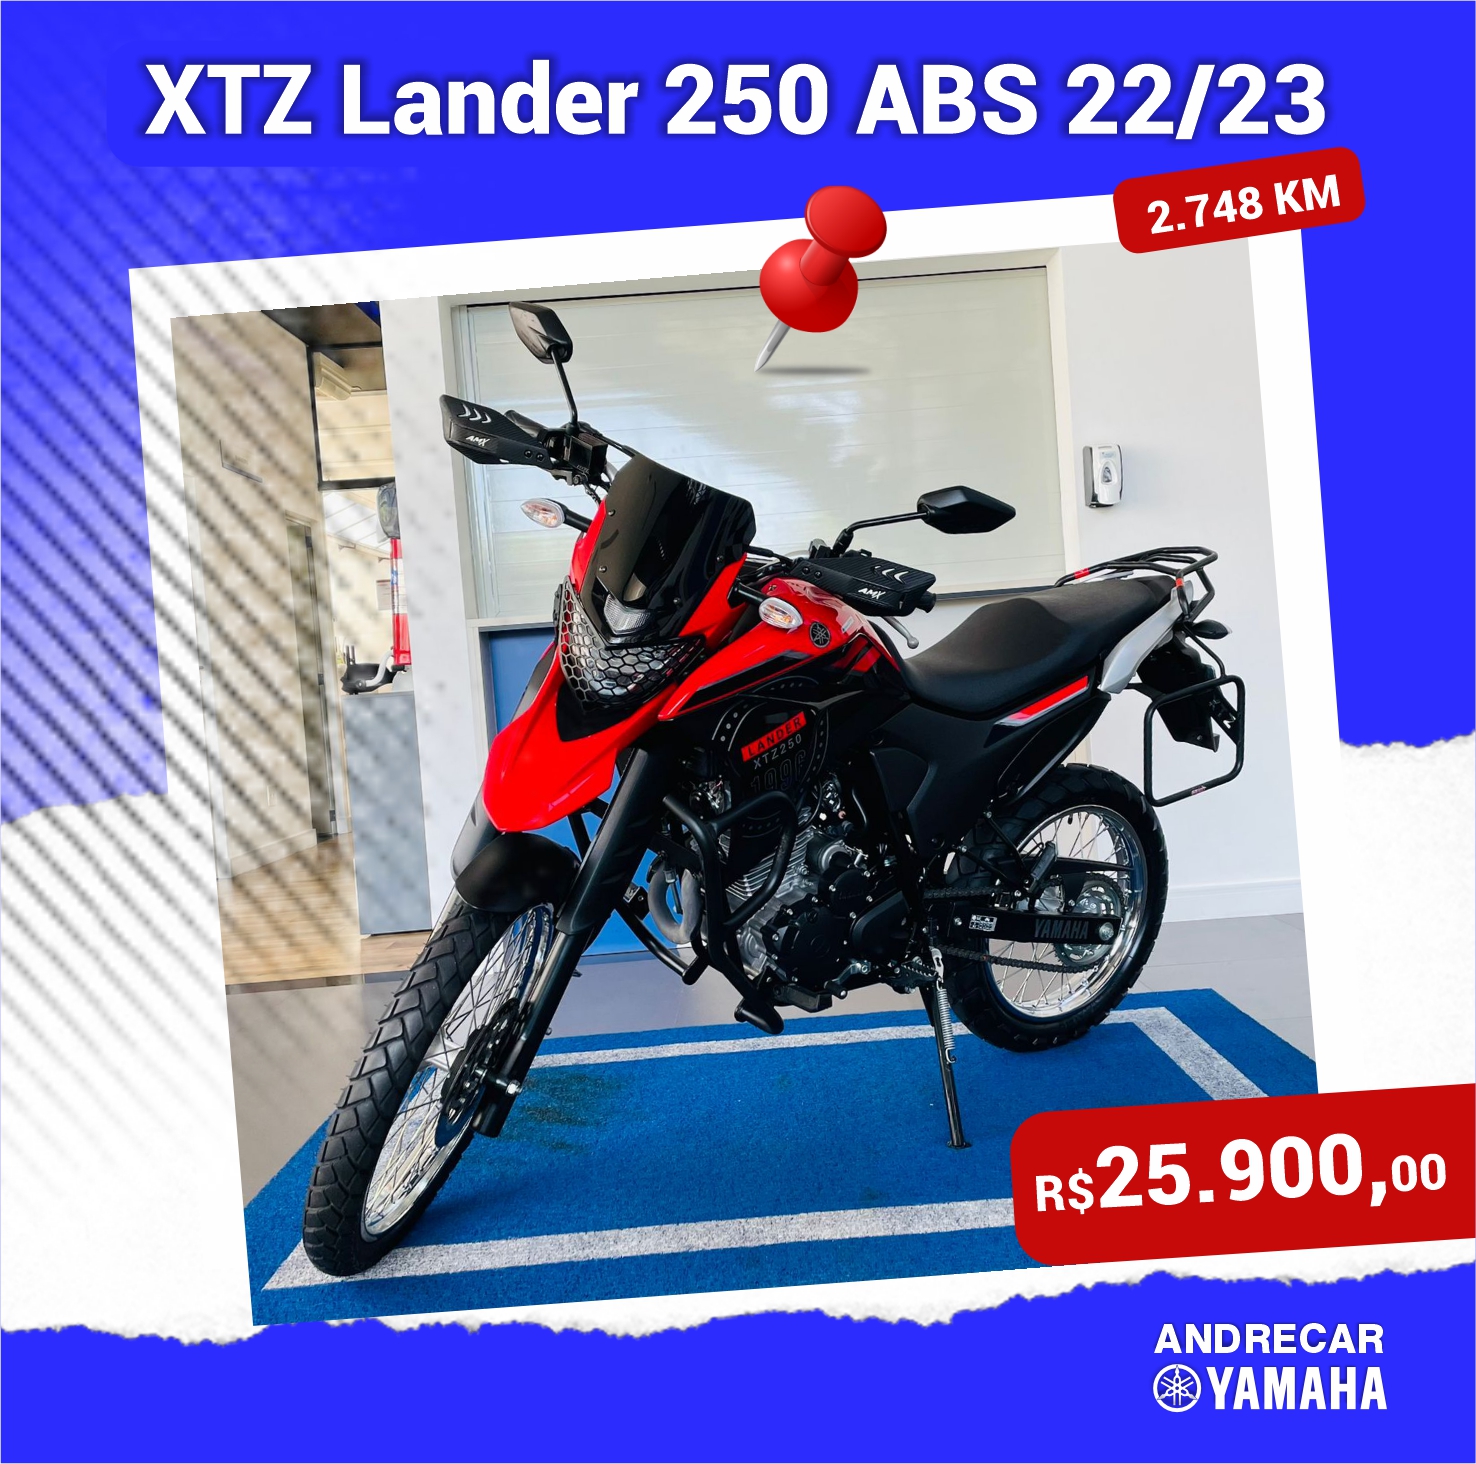 XTZ LANDER 250 ABS 22/23